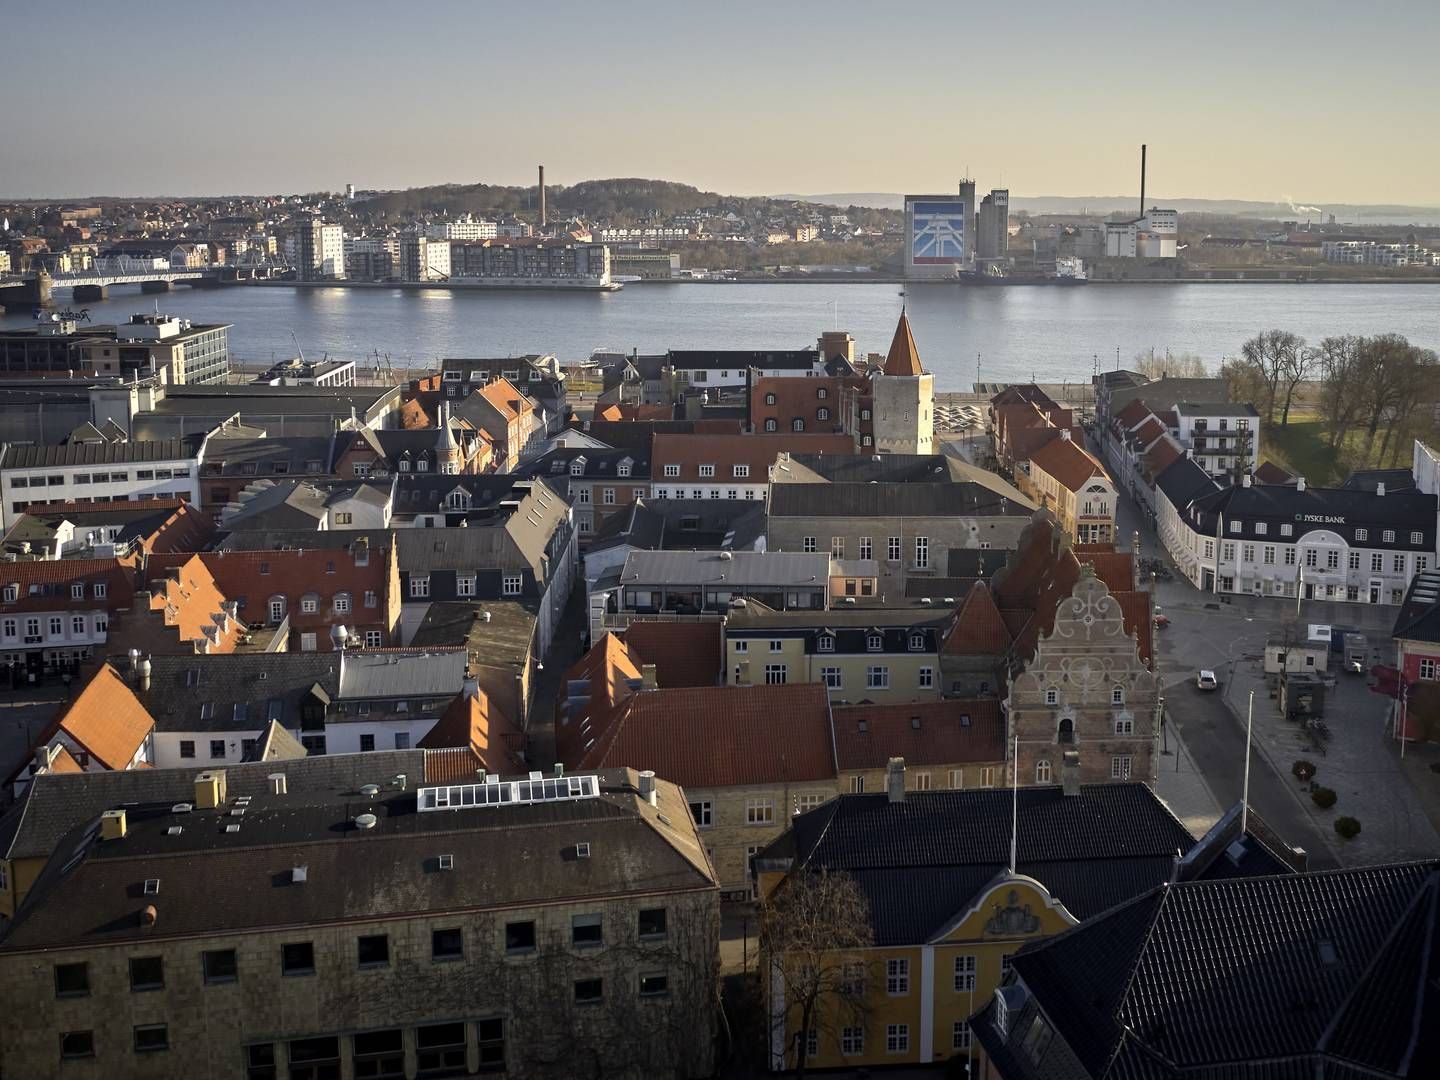 Projektet, som Agat Ejendomme har frasolgt, ligger i Aalborg. | Foto: Mikkel Berg Pedersen / Ritzau Scanpix